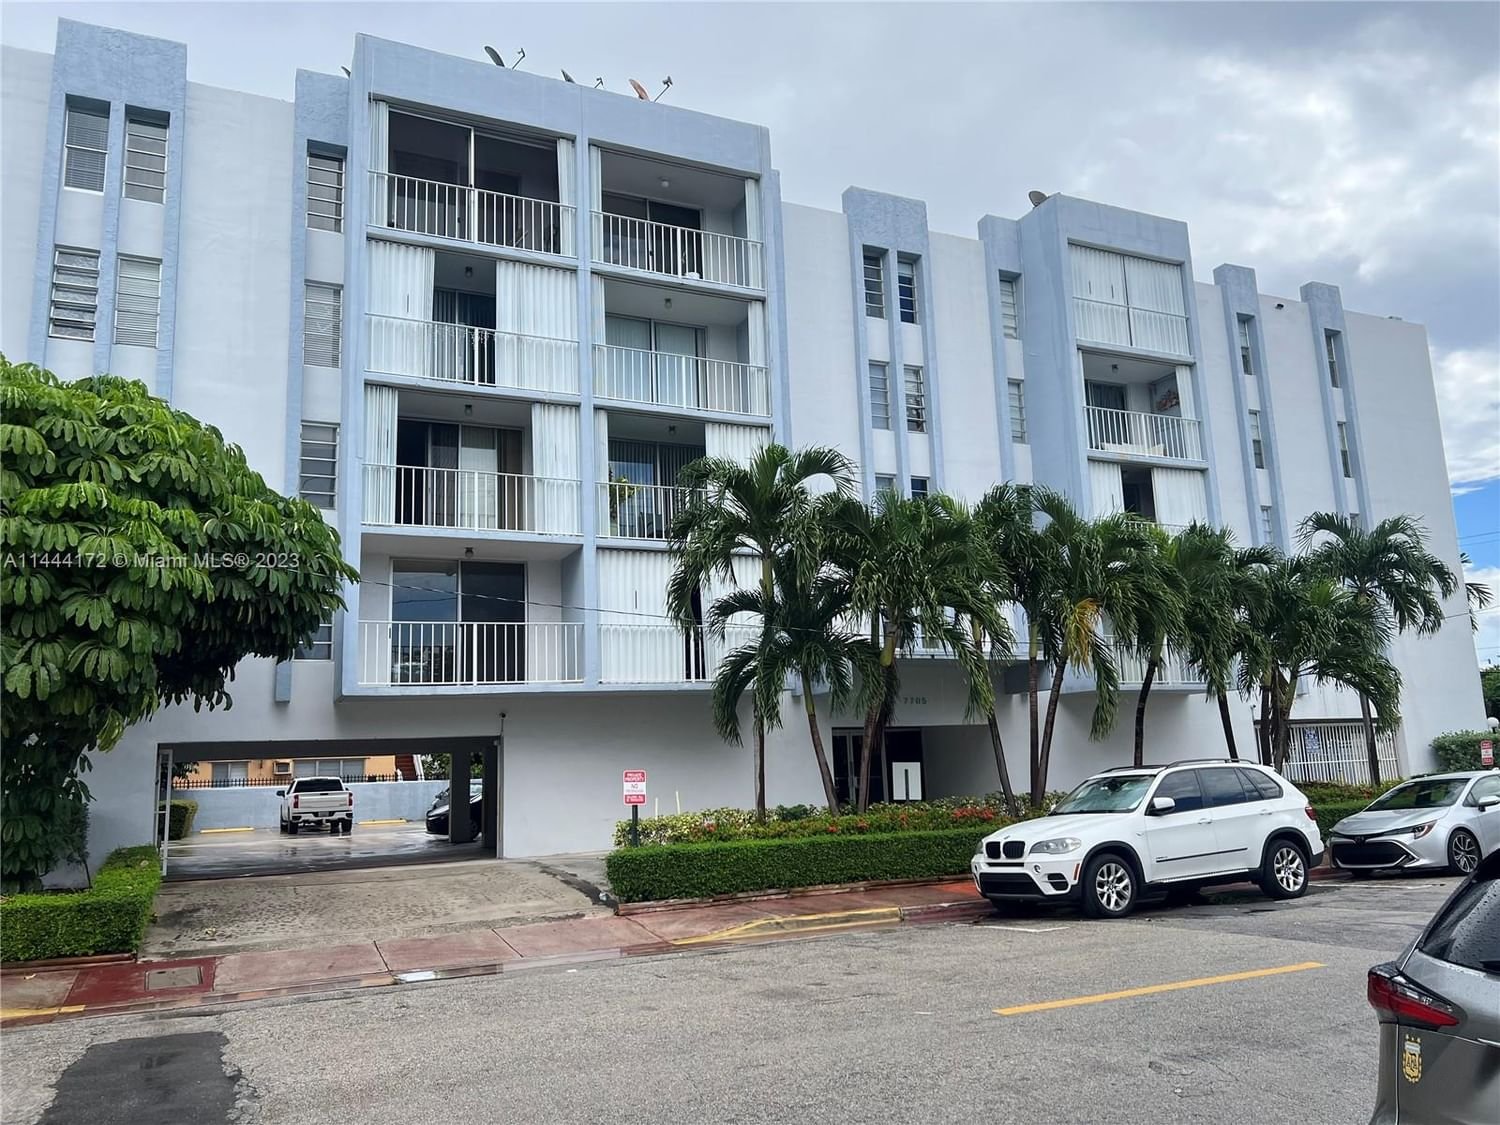 Real estate property located at 7705 Abbott Ave #305, Miami-Dade County, BRISAS DEL MAR CONDO, Miami Beach, FL